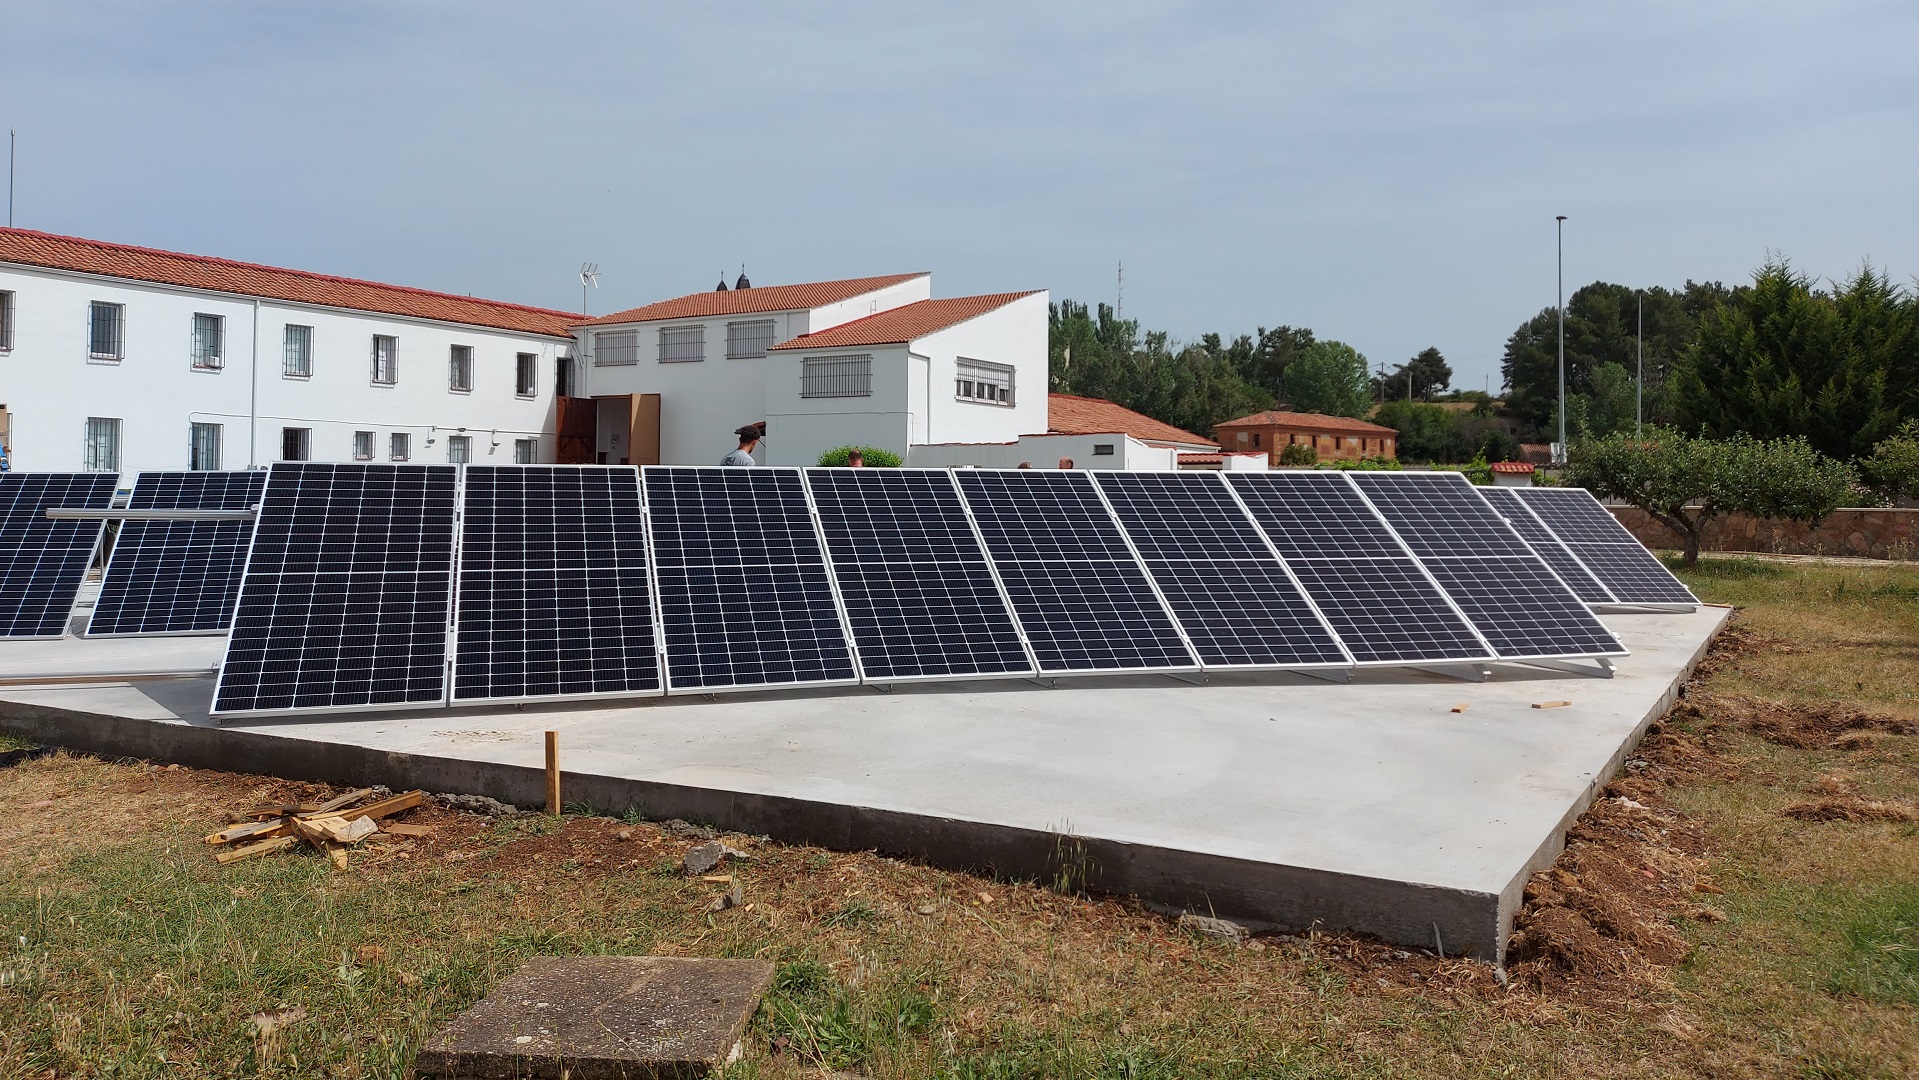 Instalación solar fotovoltaica para autoconsumo de 16,56 kWp en el Convento de las Carmelitas de León